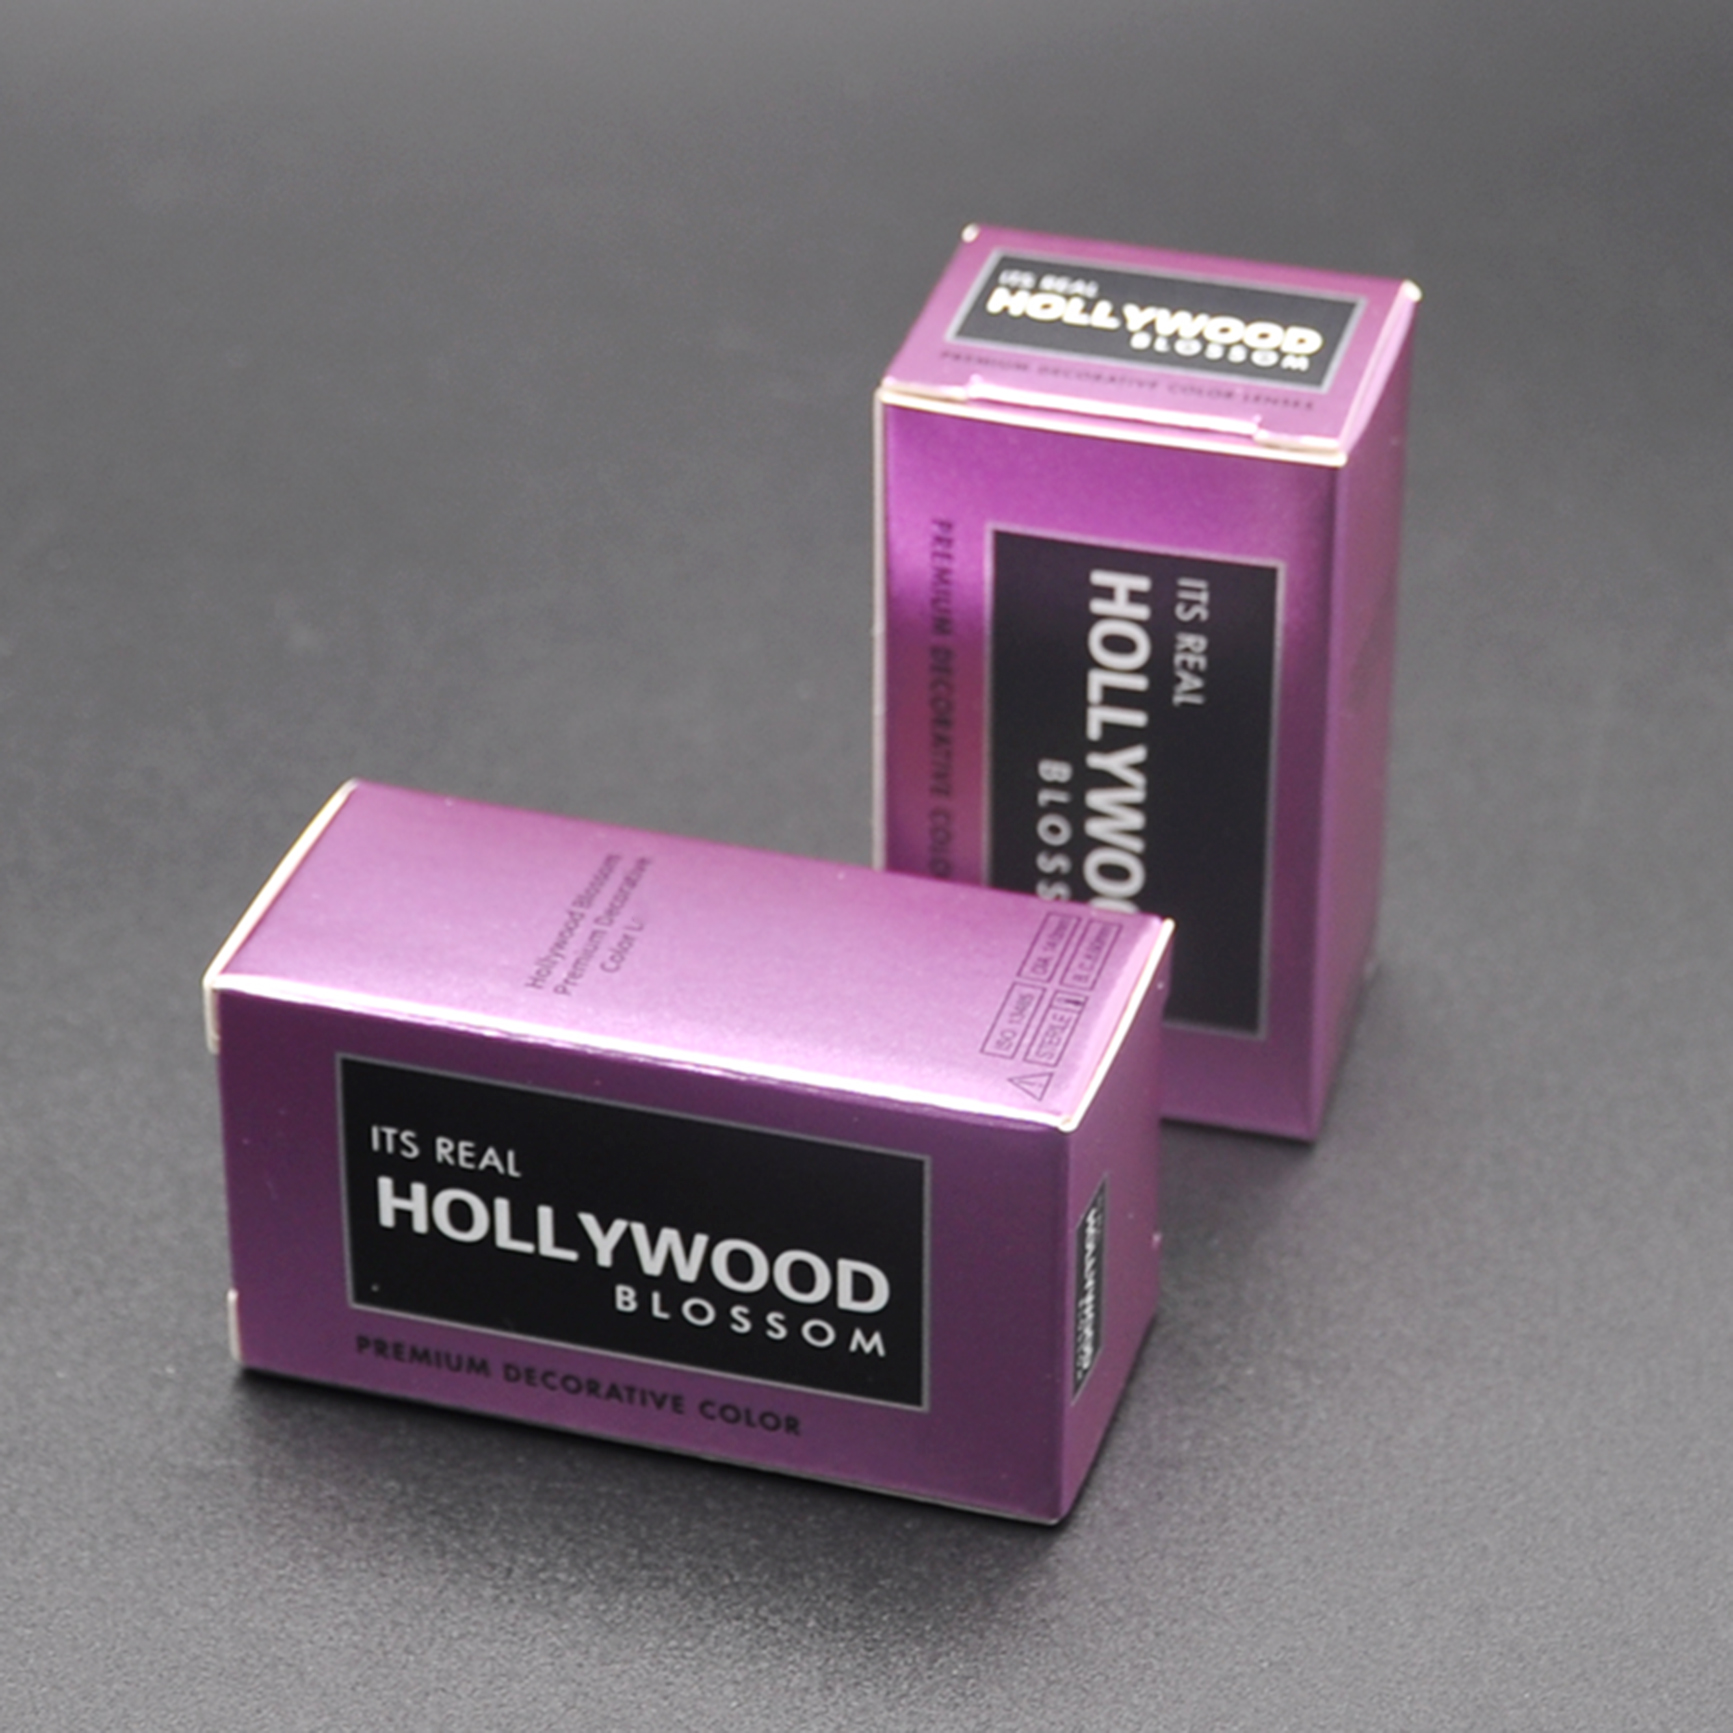 Hollywood için Freeshipping Toptan Mağaza Kutusu 20 Renk Göz İletişim Gerçek Hollywood Blossom İletişim Birden fazla Renk Paketleme Kılıfı Lentes De Contacto Kutuları